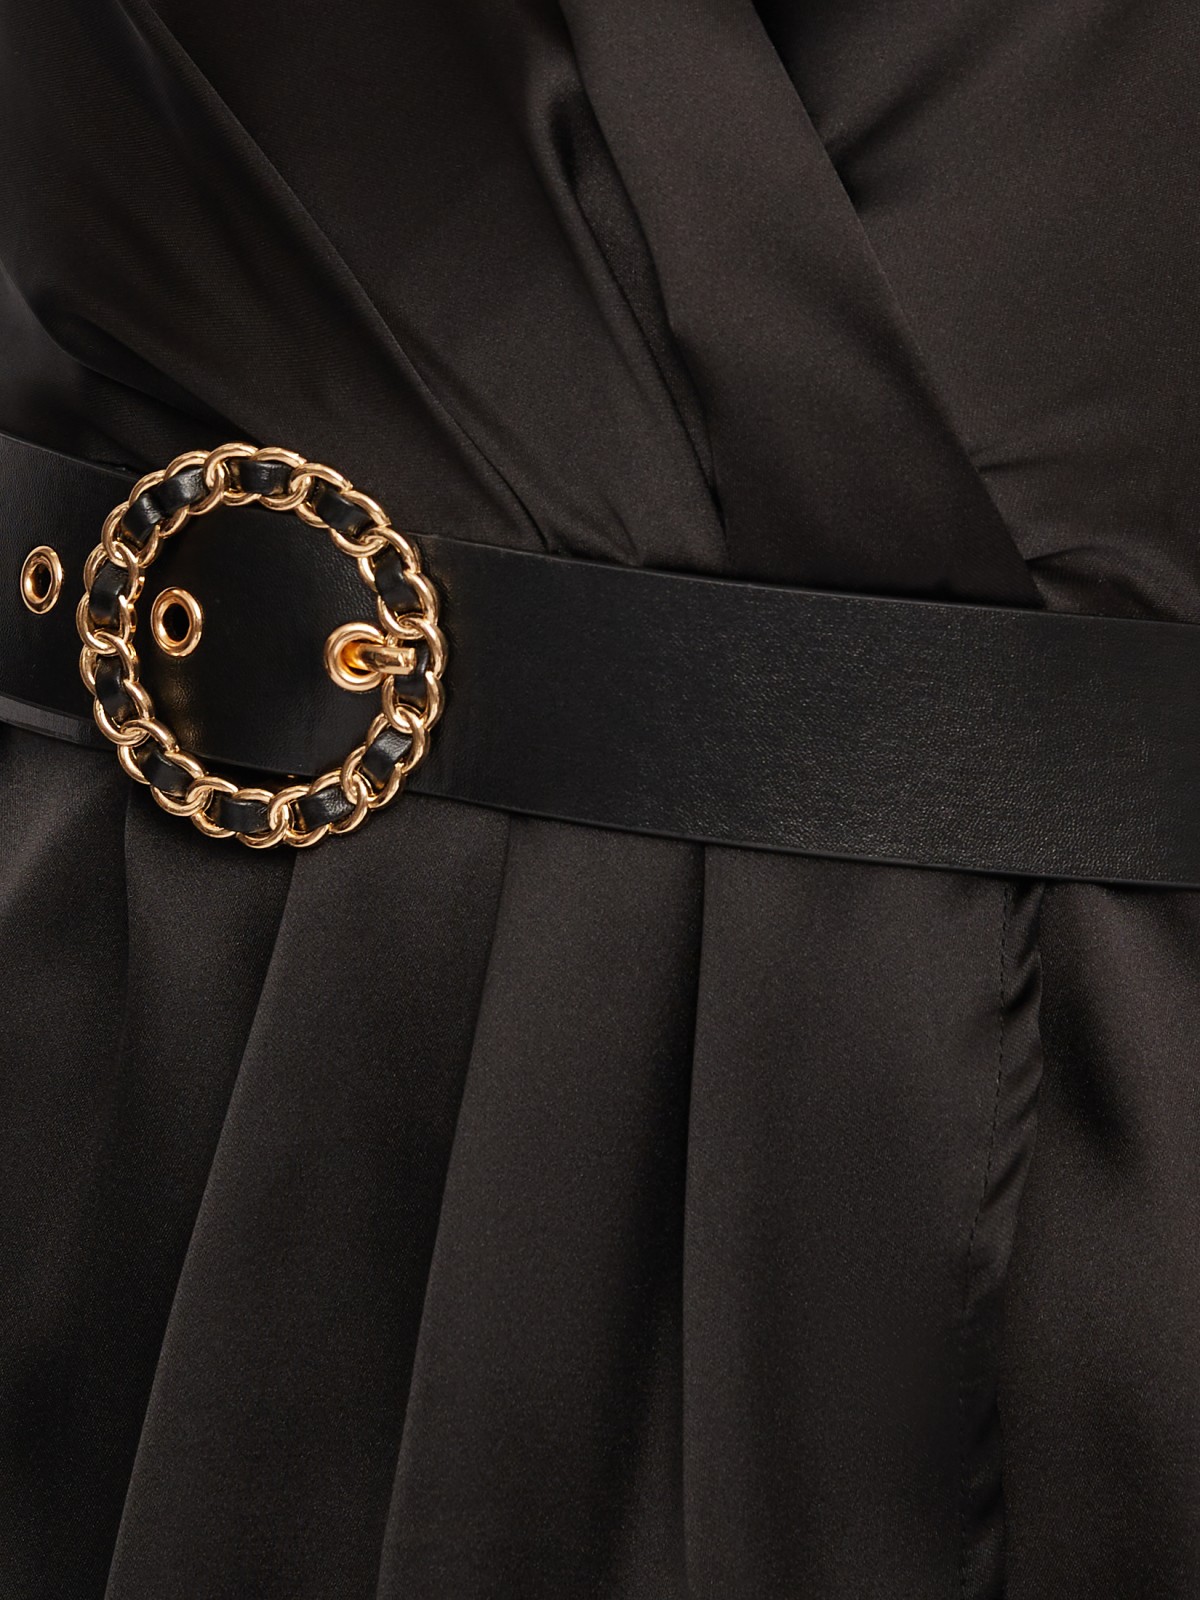 Атласное платье длины мини на запах zolla 024118262183, цвет черный, размер M - фото 4